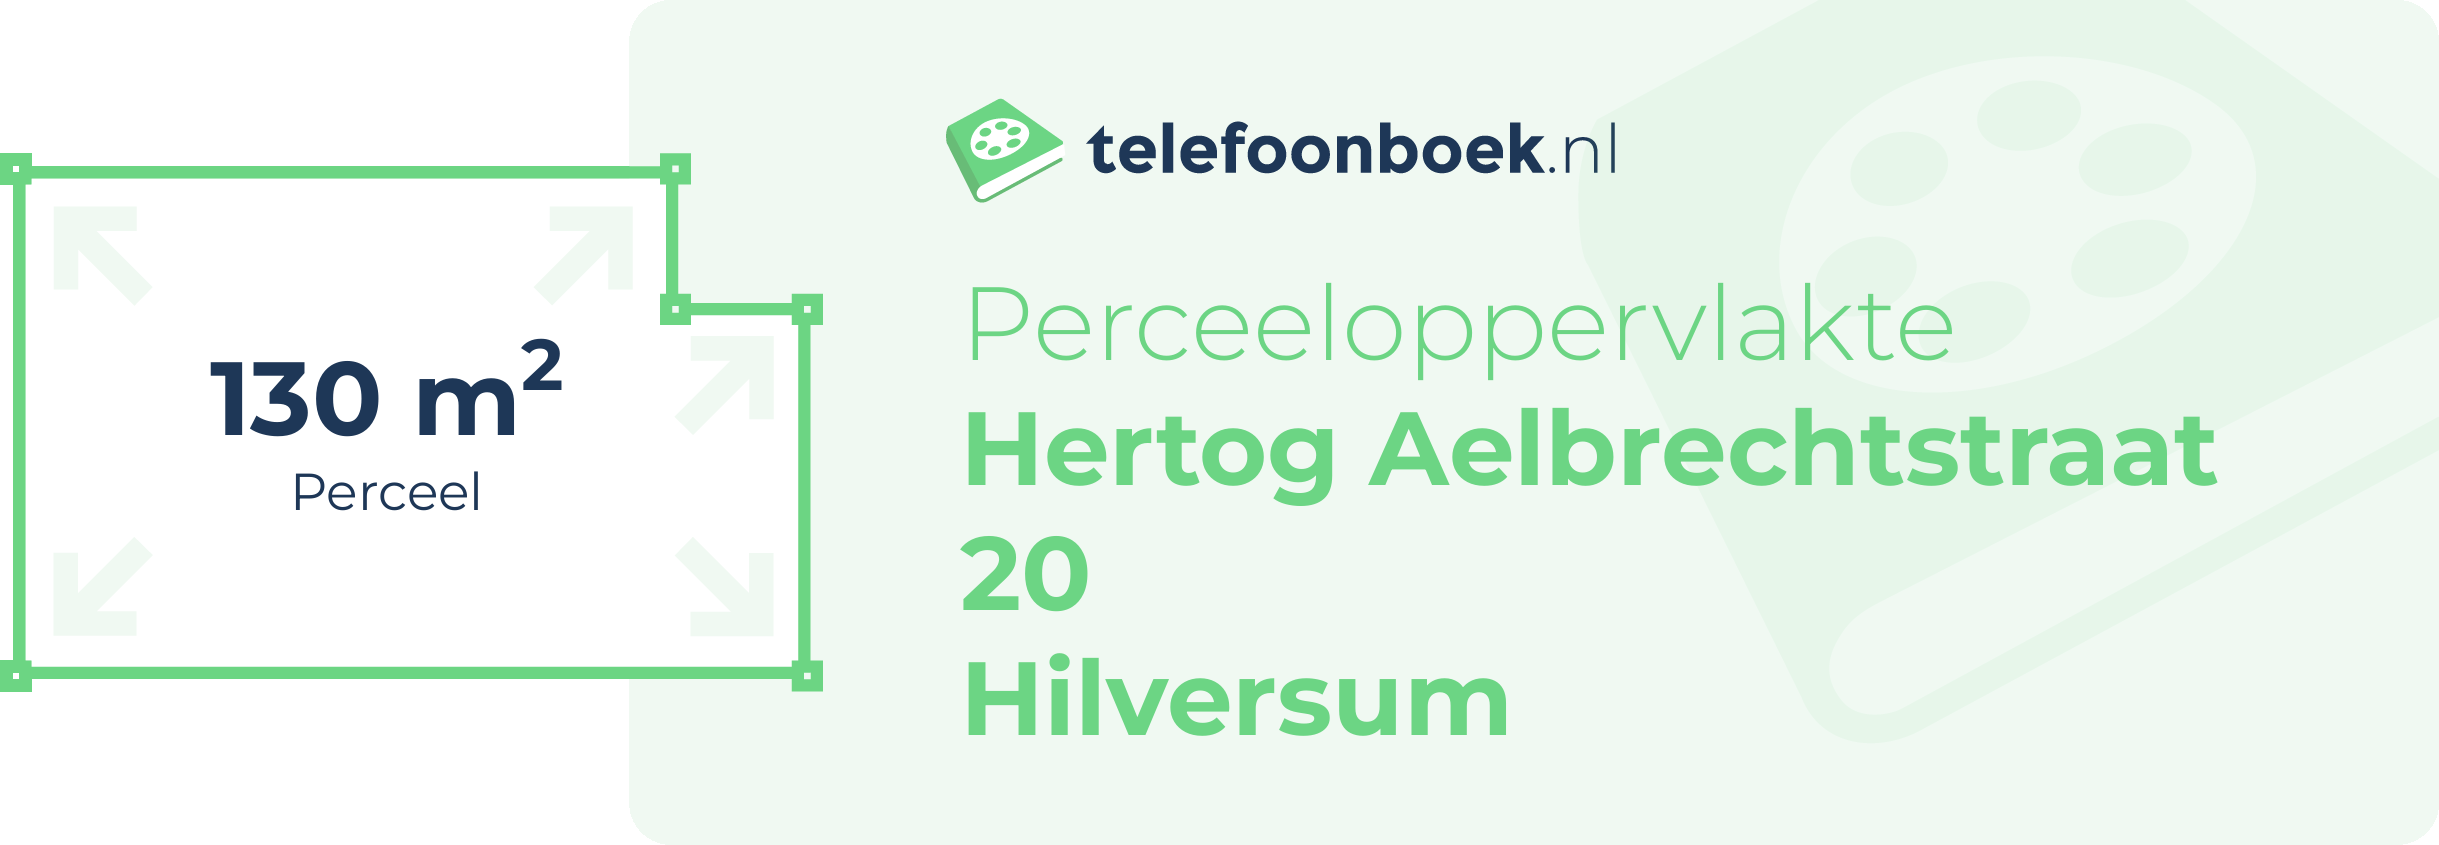 Perceeloppervlakte Hertog Aelbrechtstraat 20 Hilversum